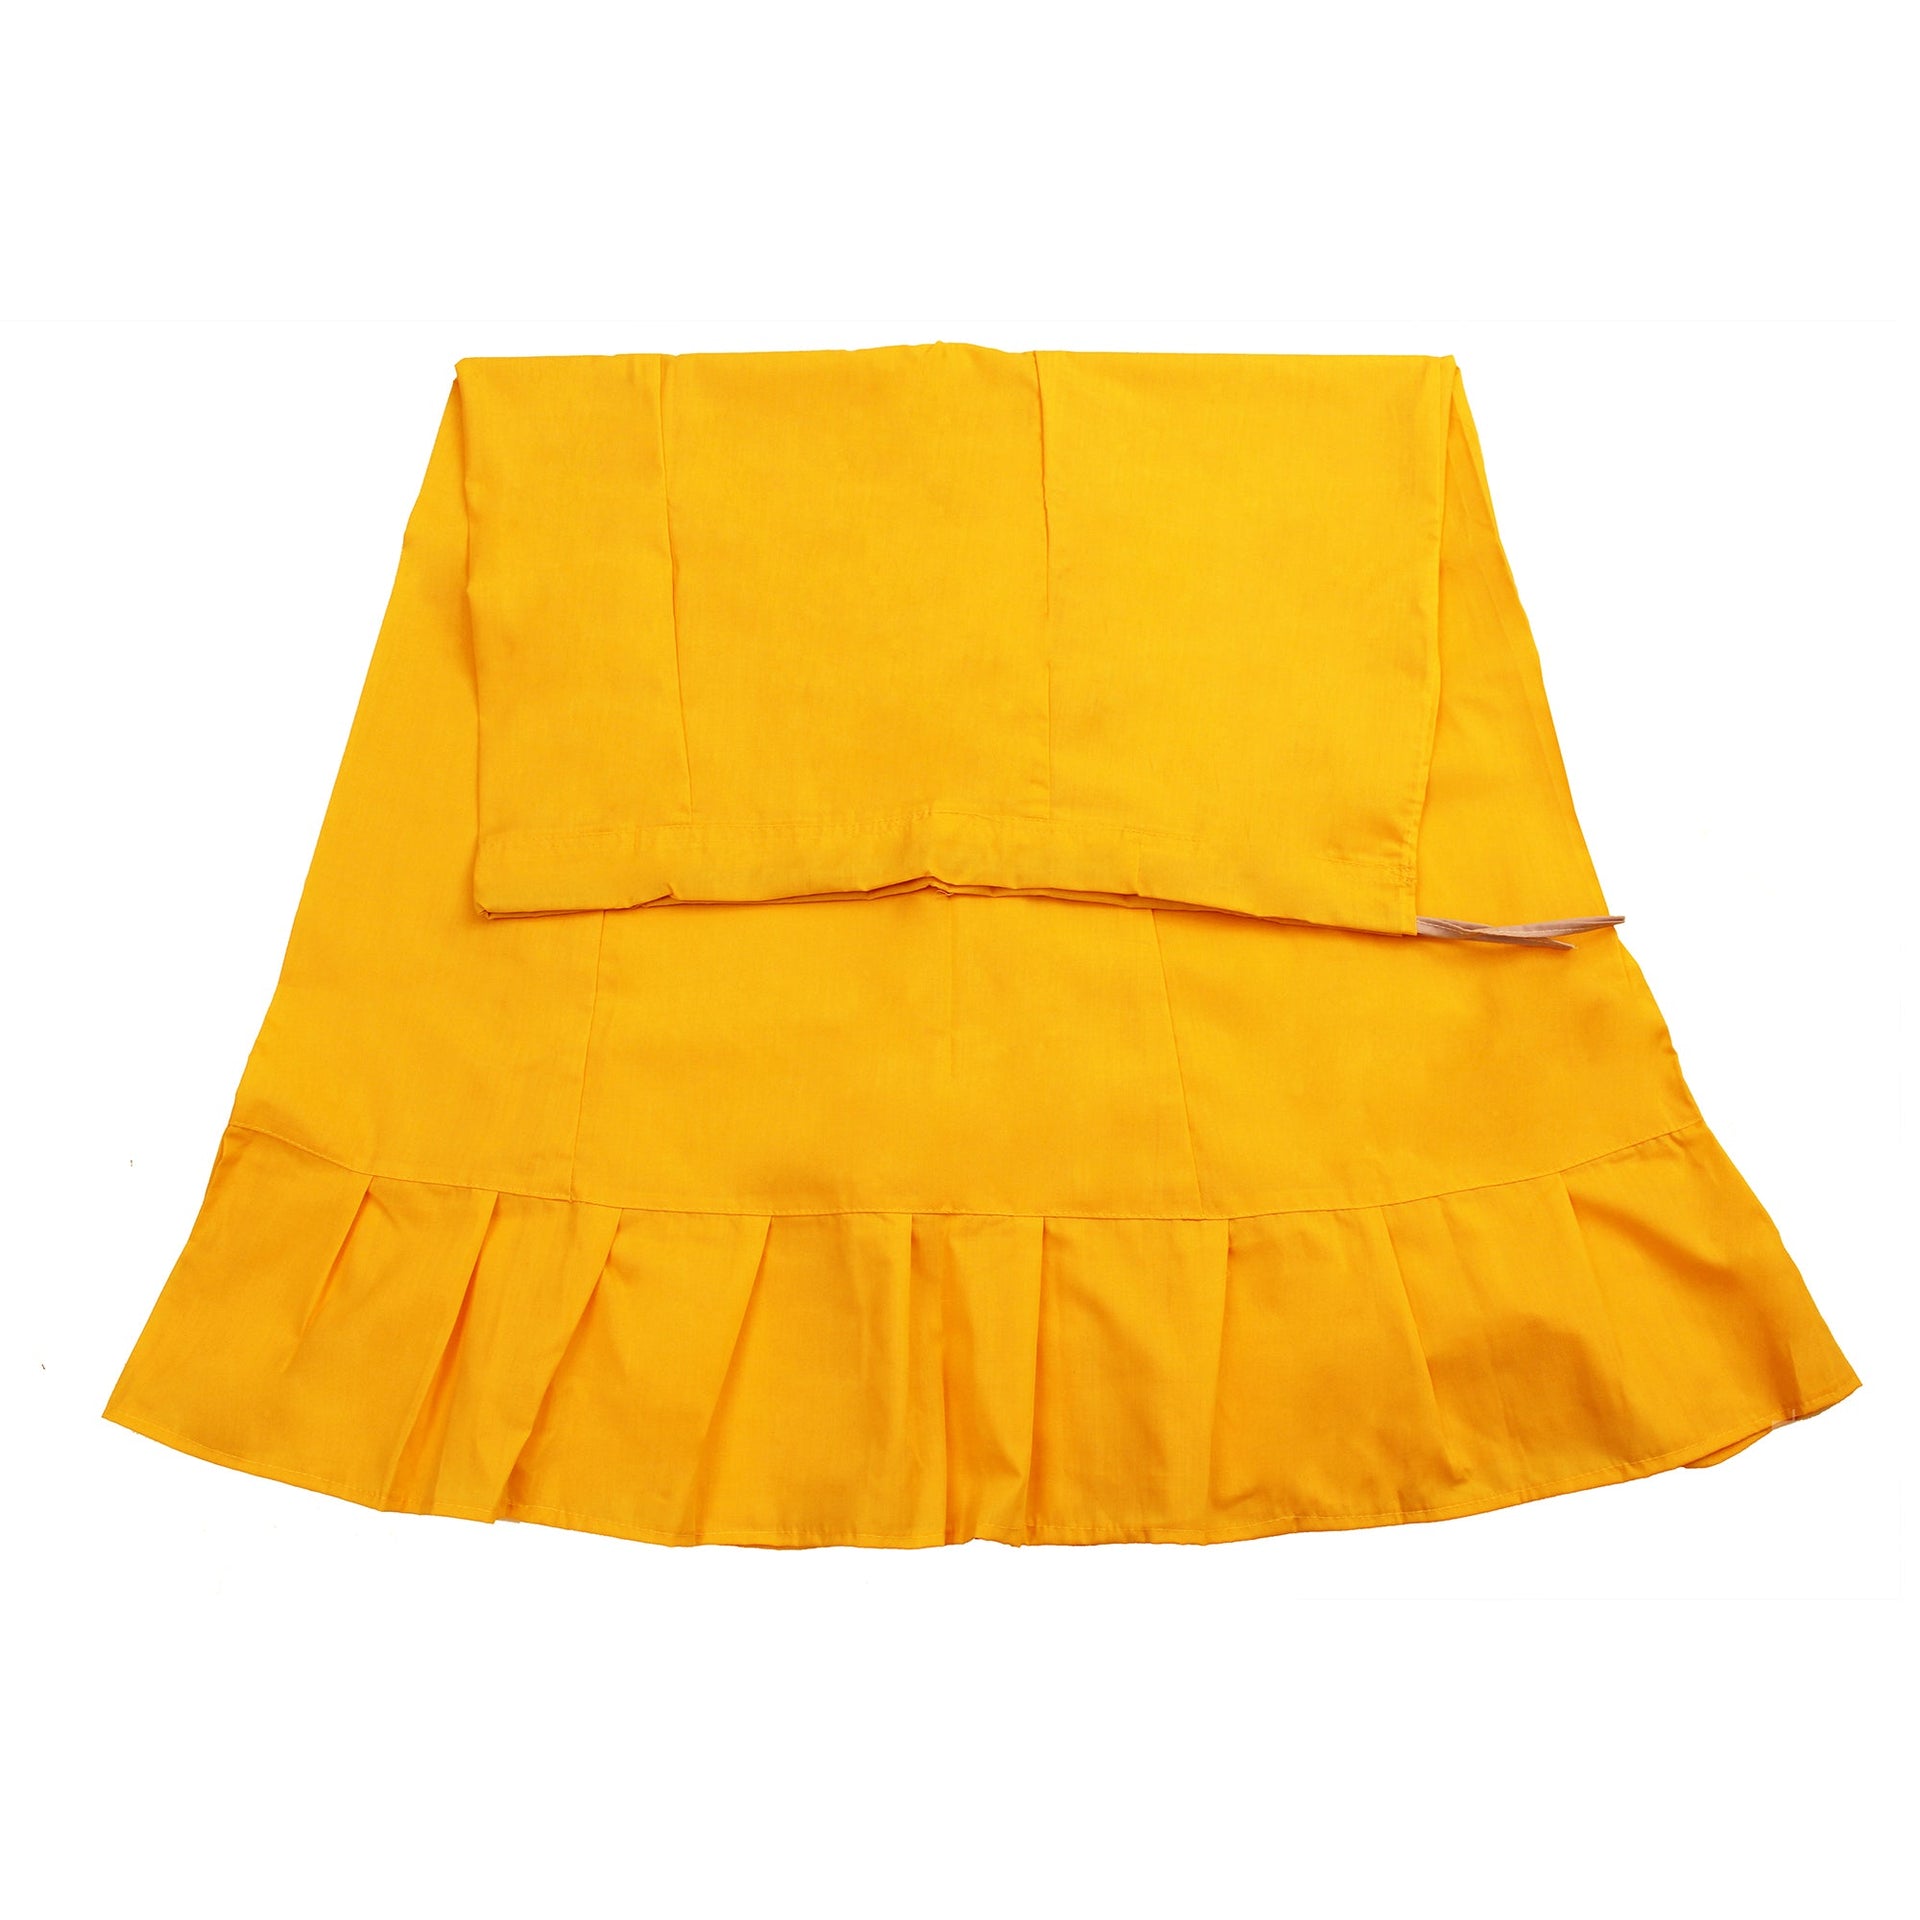 Sari (Saree) Petticoat - Medium Size - Underskirts For Sari's